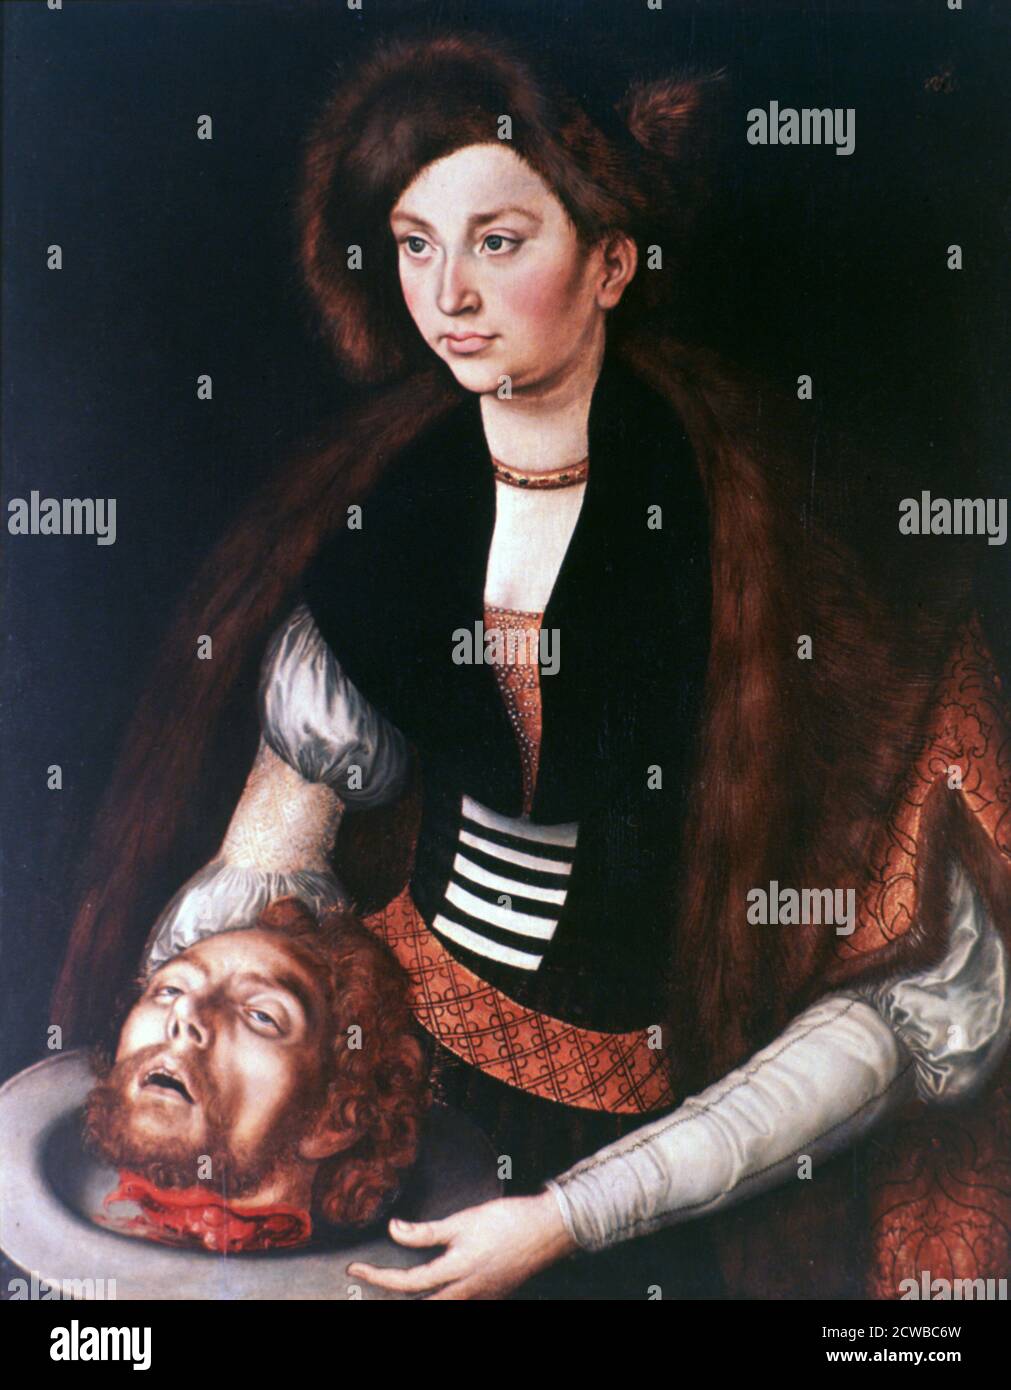 Pintura de Lucas Cranach el Viejo titulada 'Sálome', c1504-1553. Salome sosteniendo una fuente con la cabeza decapitada de Juan el Bautista en ella. Foto de stock